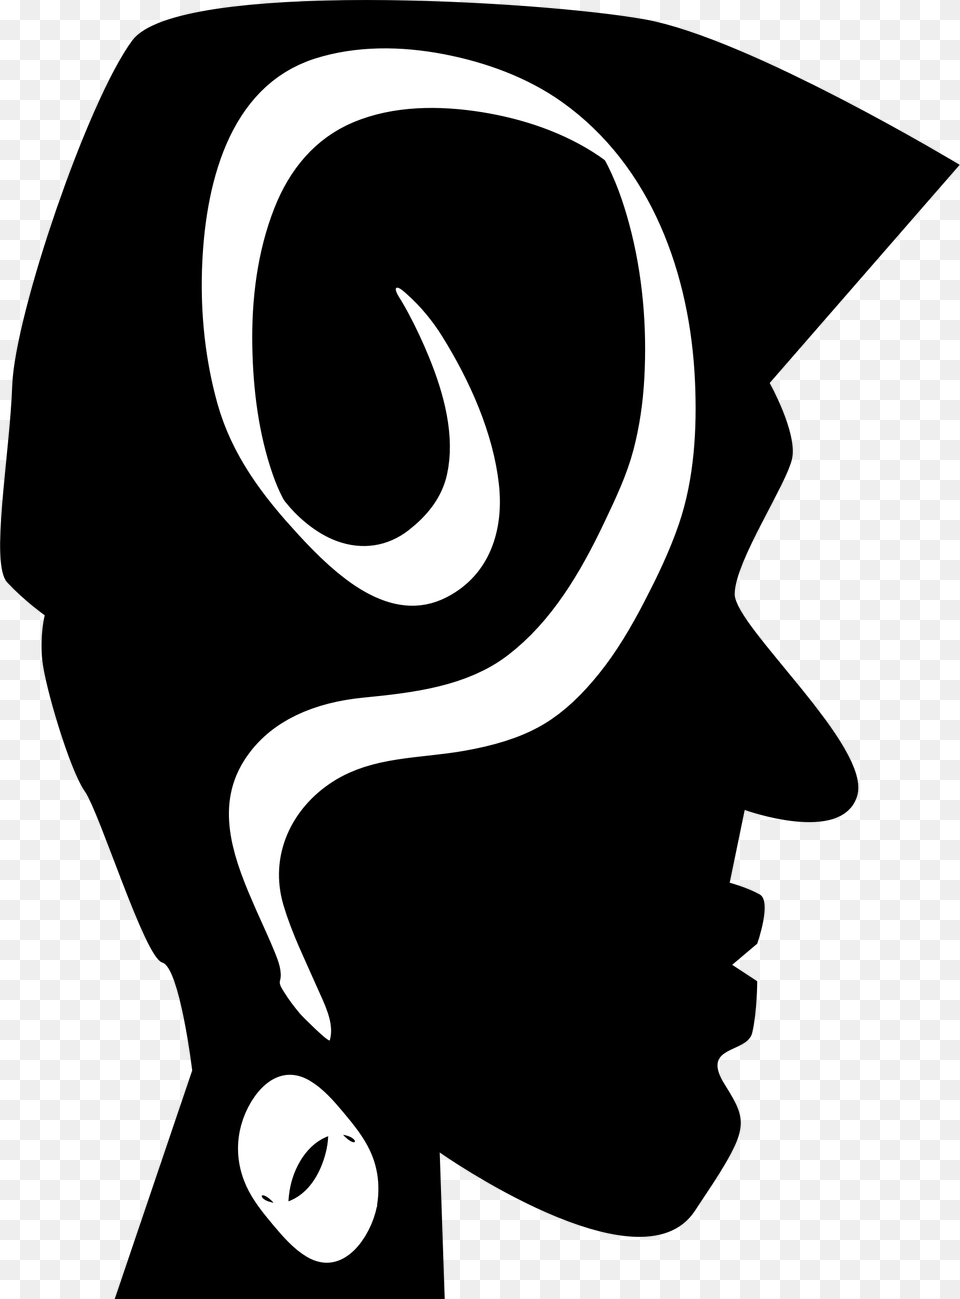 This Icons Design Of Blackheadhead, Stencil Png